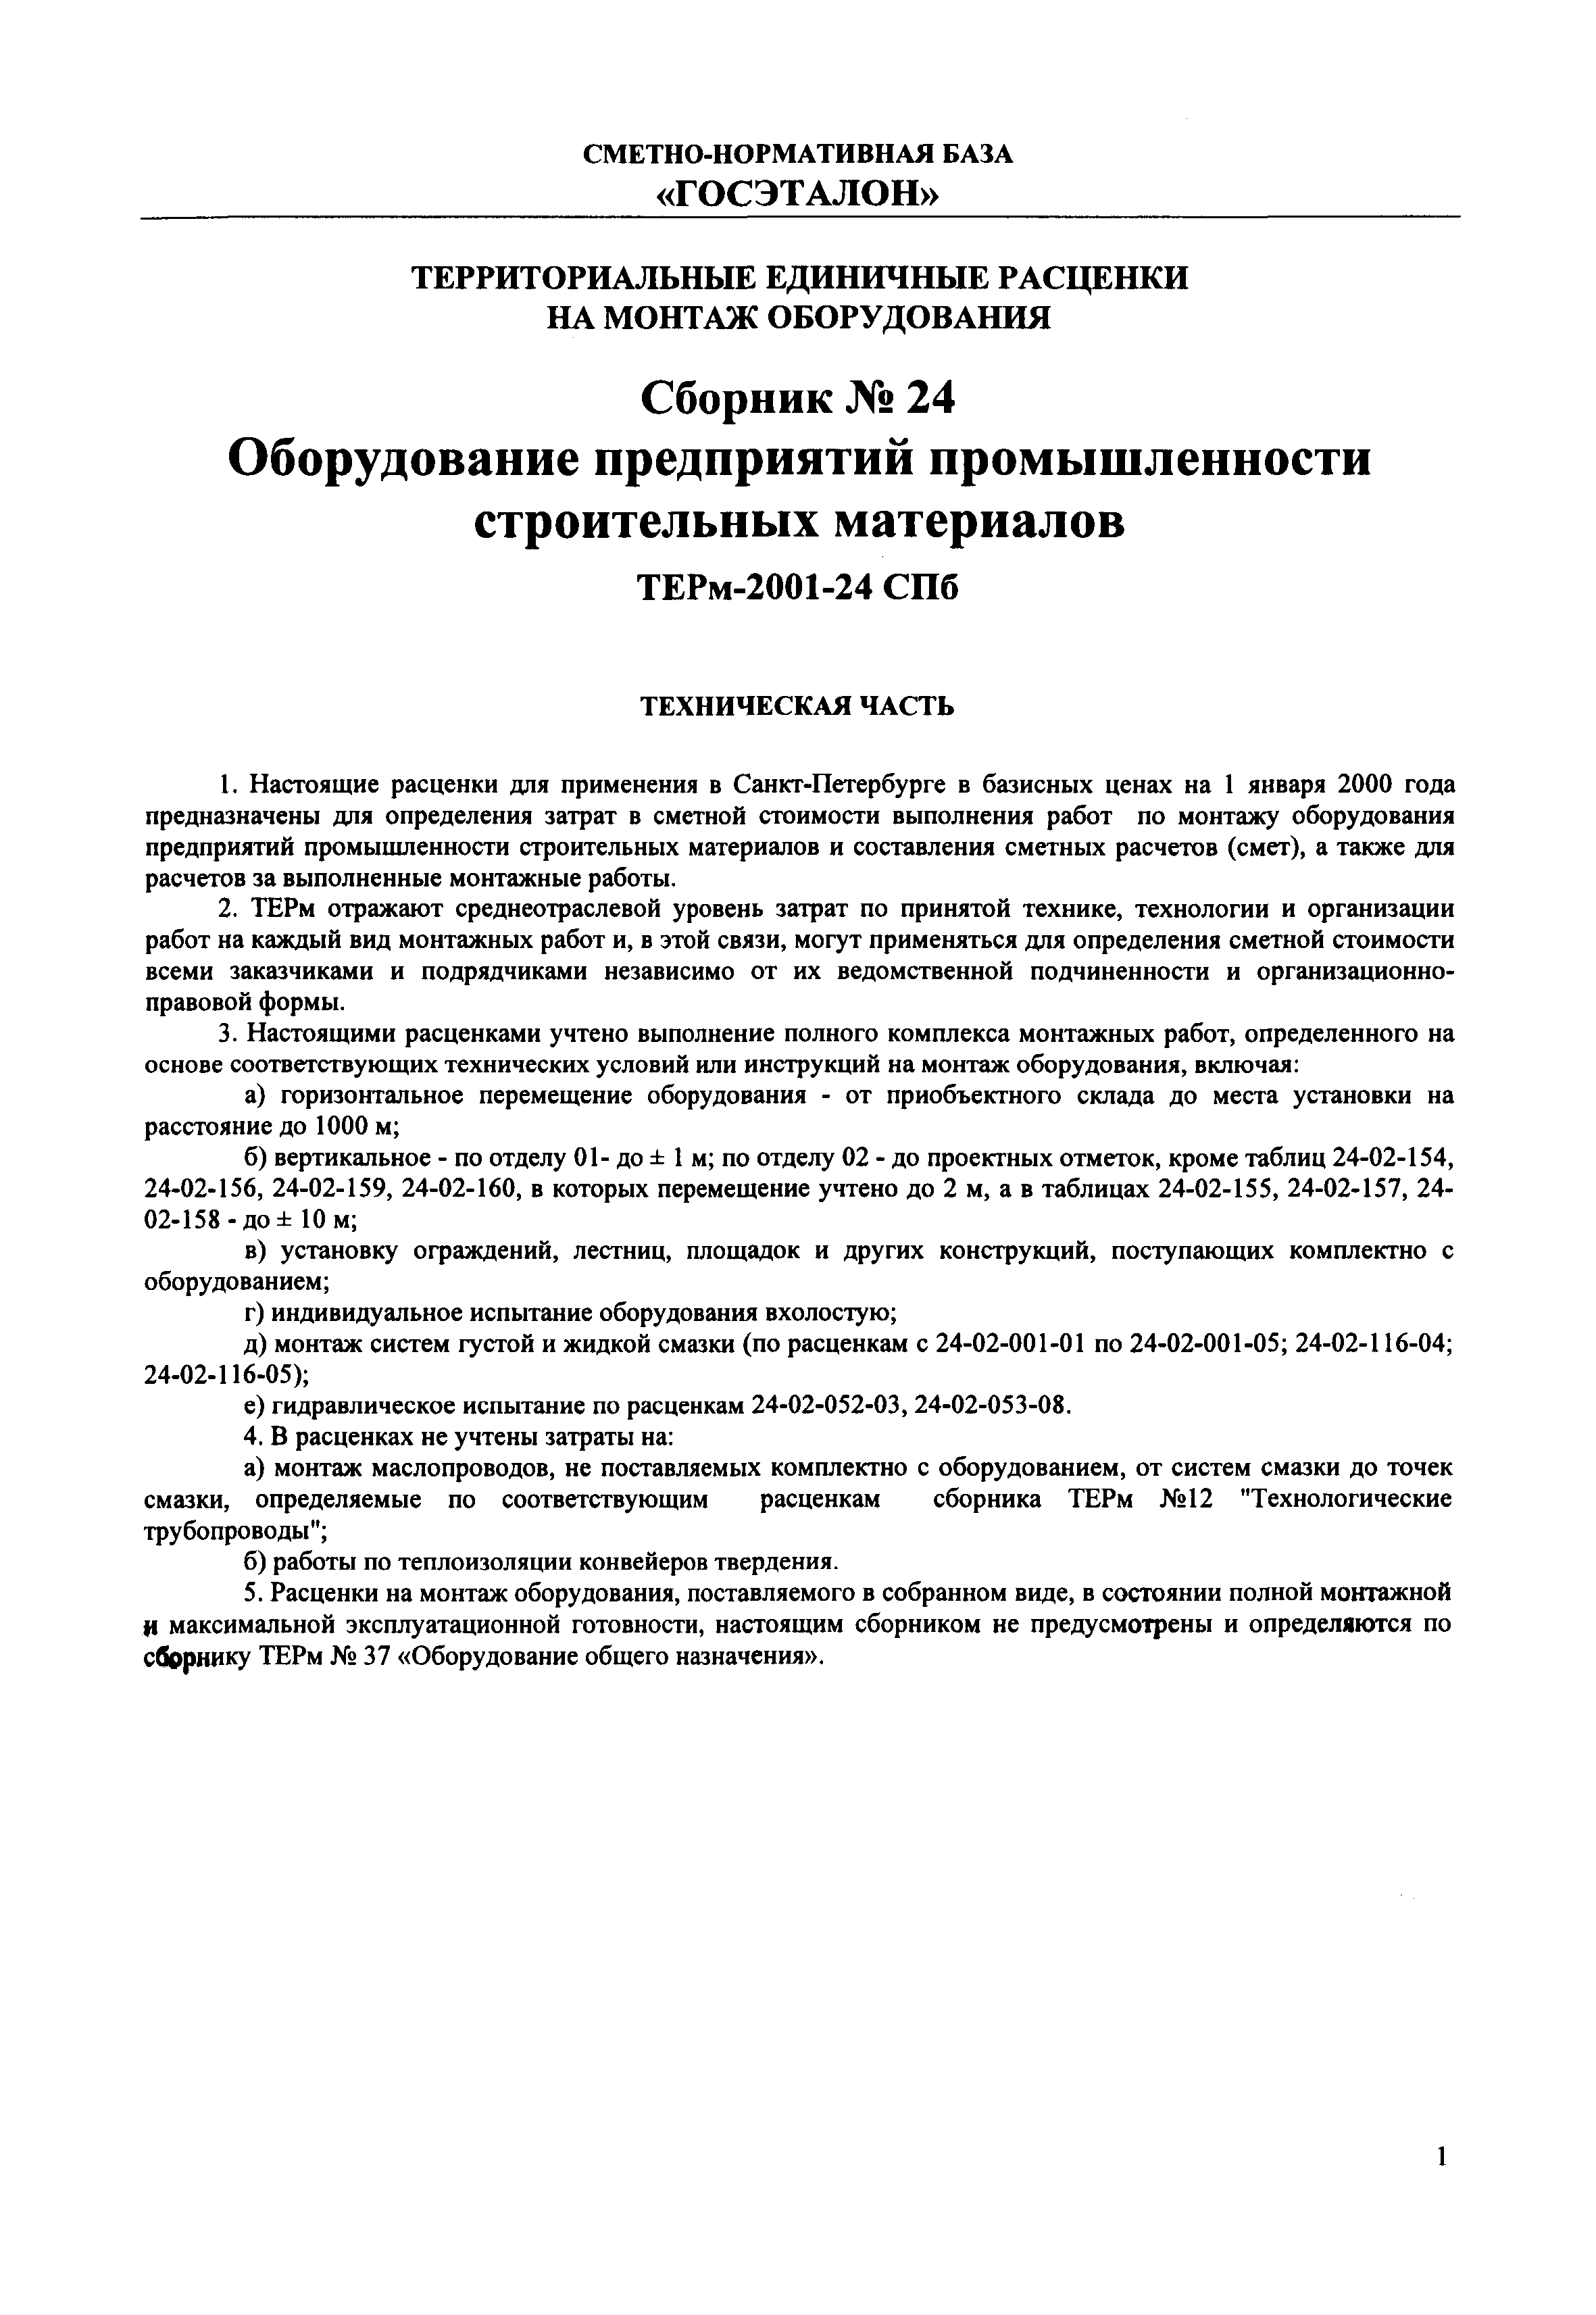 ТЕРм 2001-24 СПб